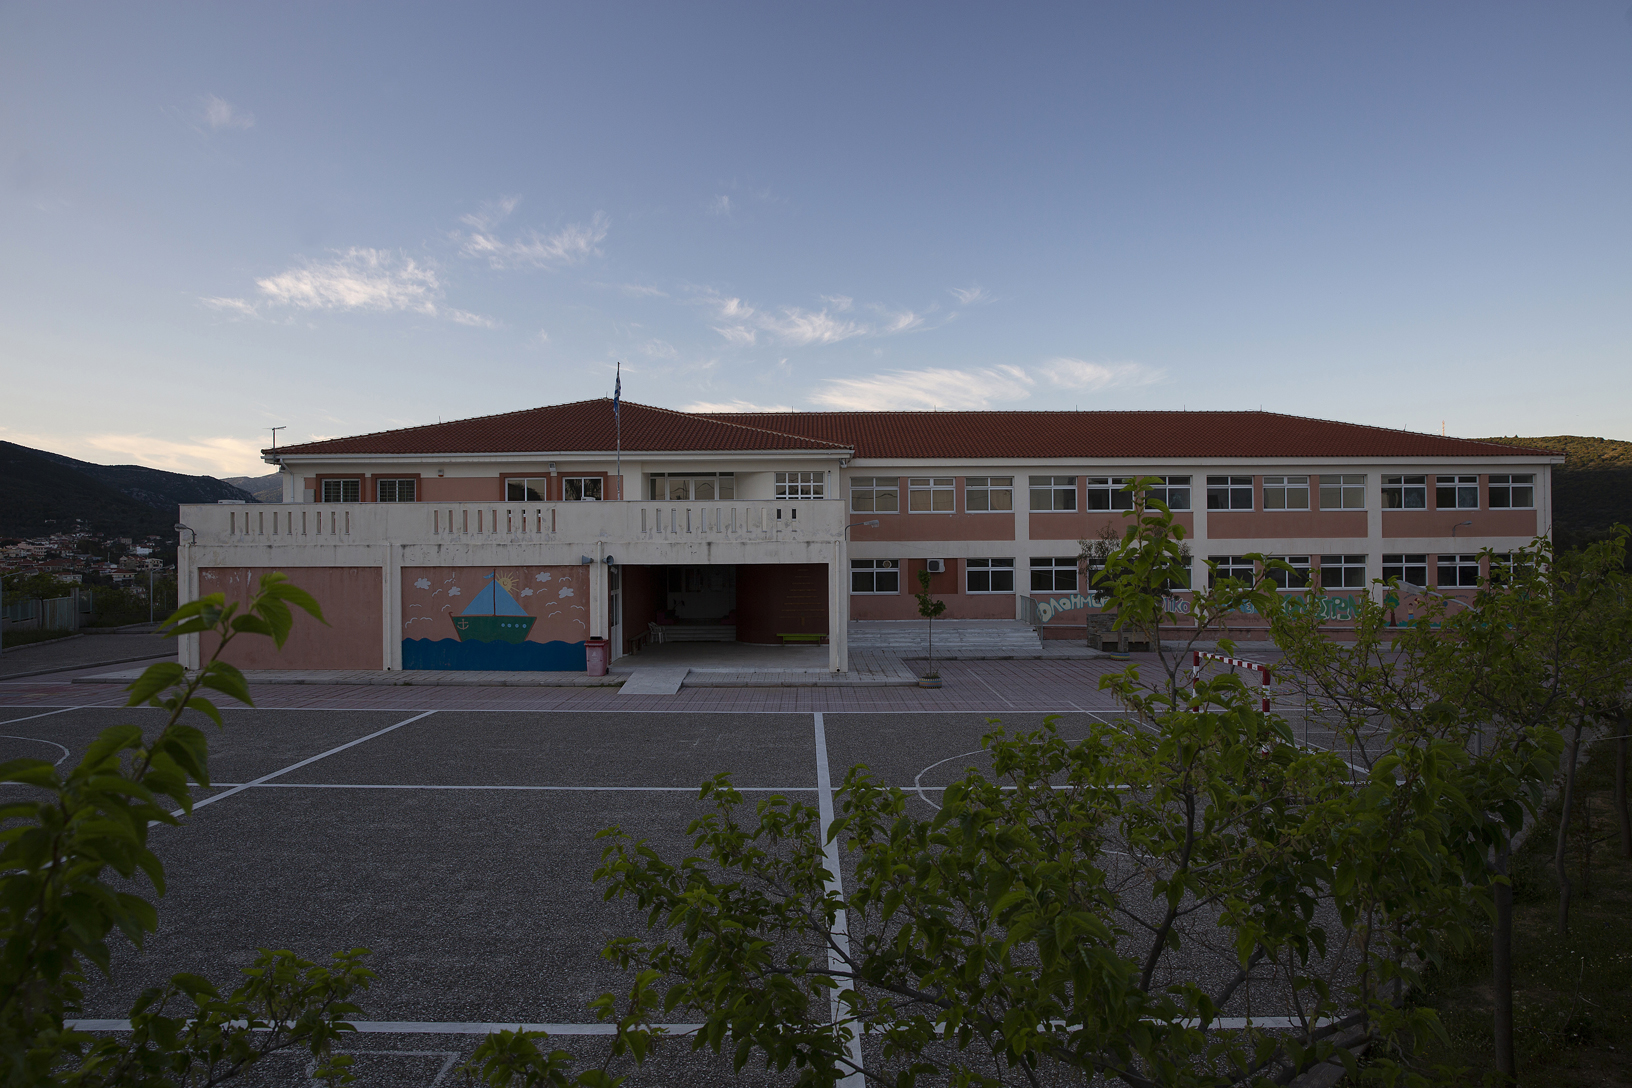 Κονίστρες, Δημοτικό Σχολείο. Φωτογραφία: ©Βασίλης Συκάς, για τον Δήμο Κύμης-Αλιβερίου